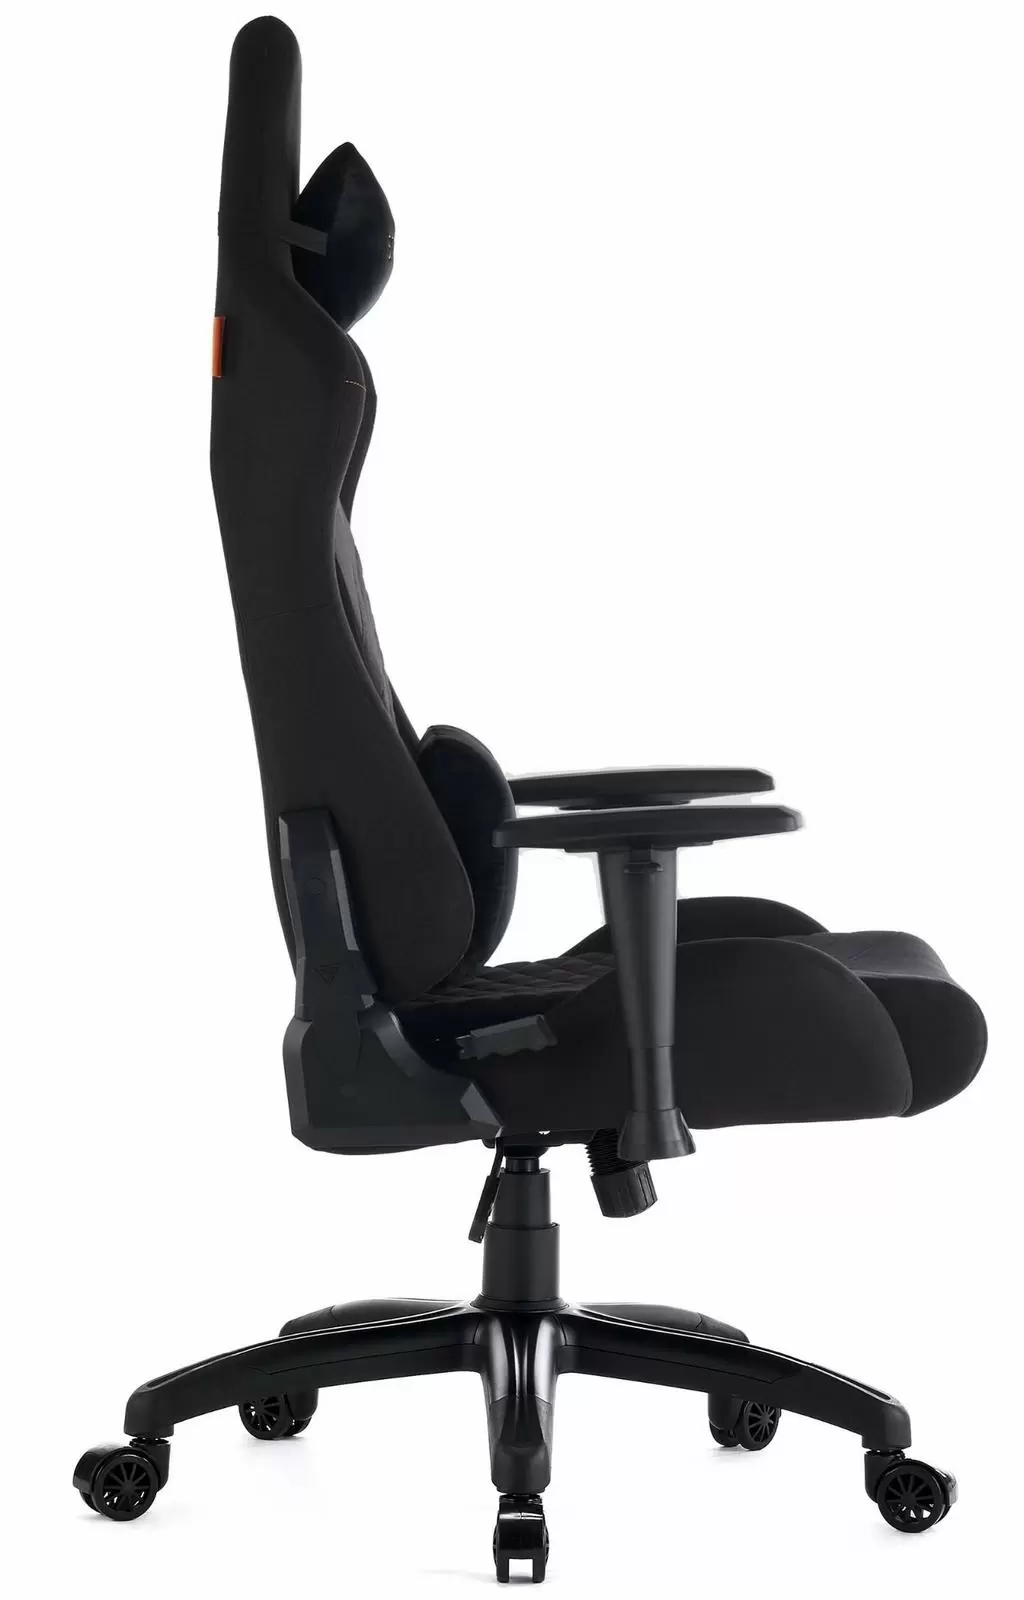 Геймерское кресло Sense7 Spellcaster Senshi Edition XL Fabric, черный